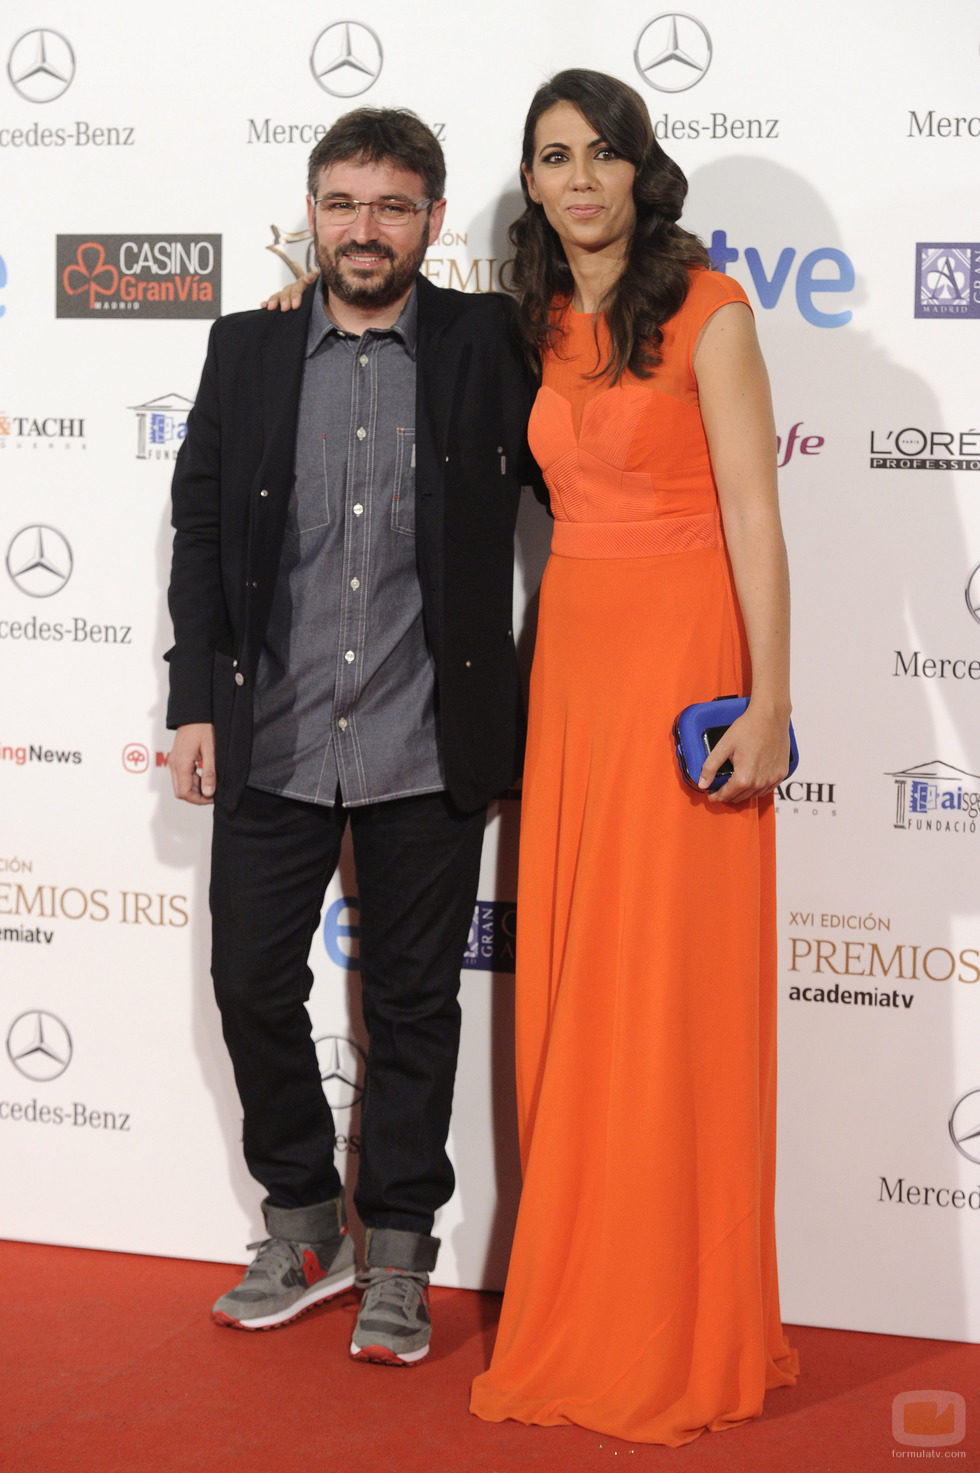 Jordi Évole y Ana Pastor en los Premios Iris 2014